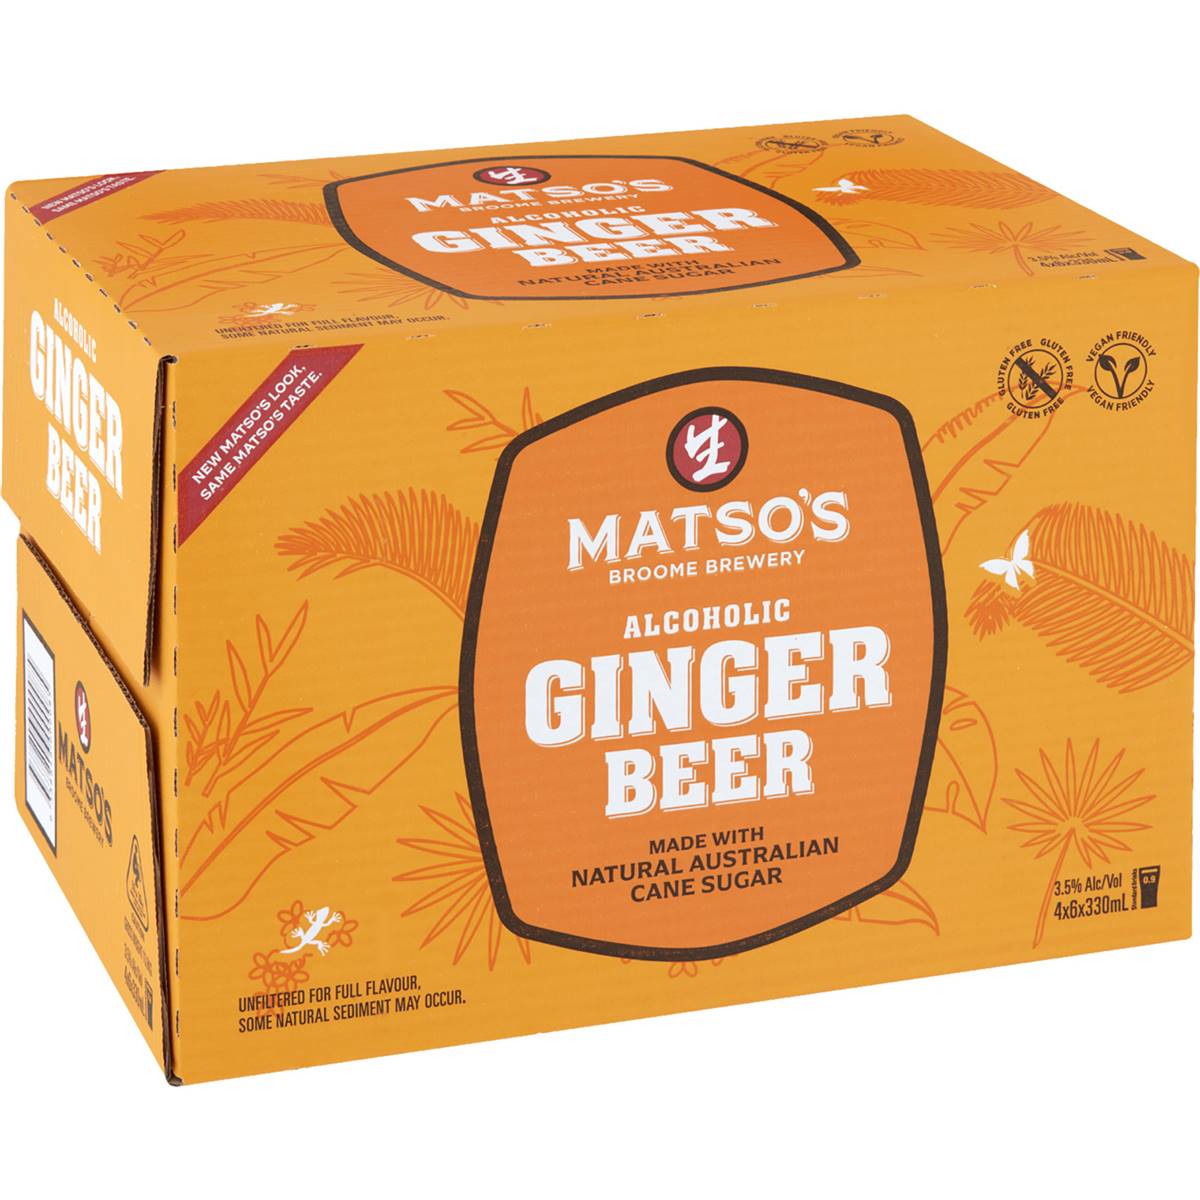 Matso's Ginger Beer Bottles